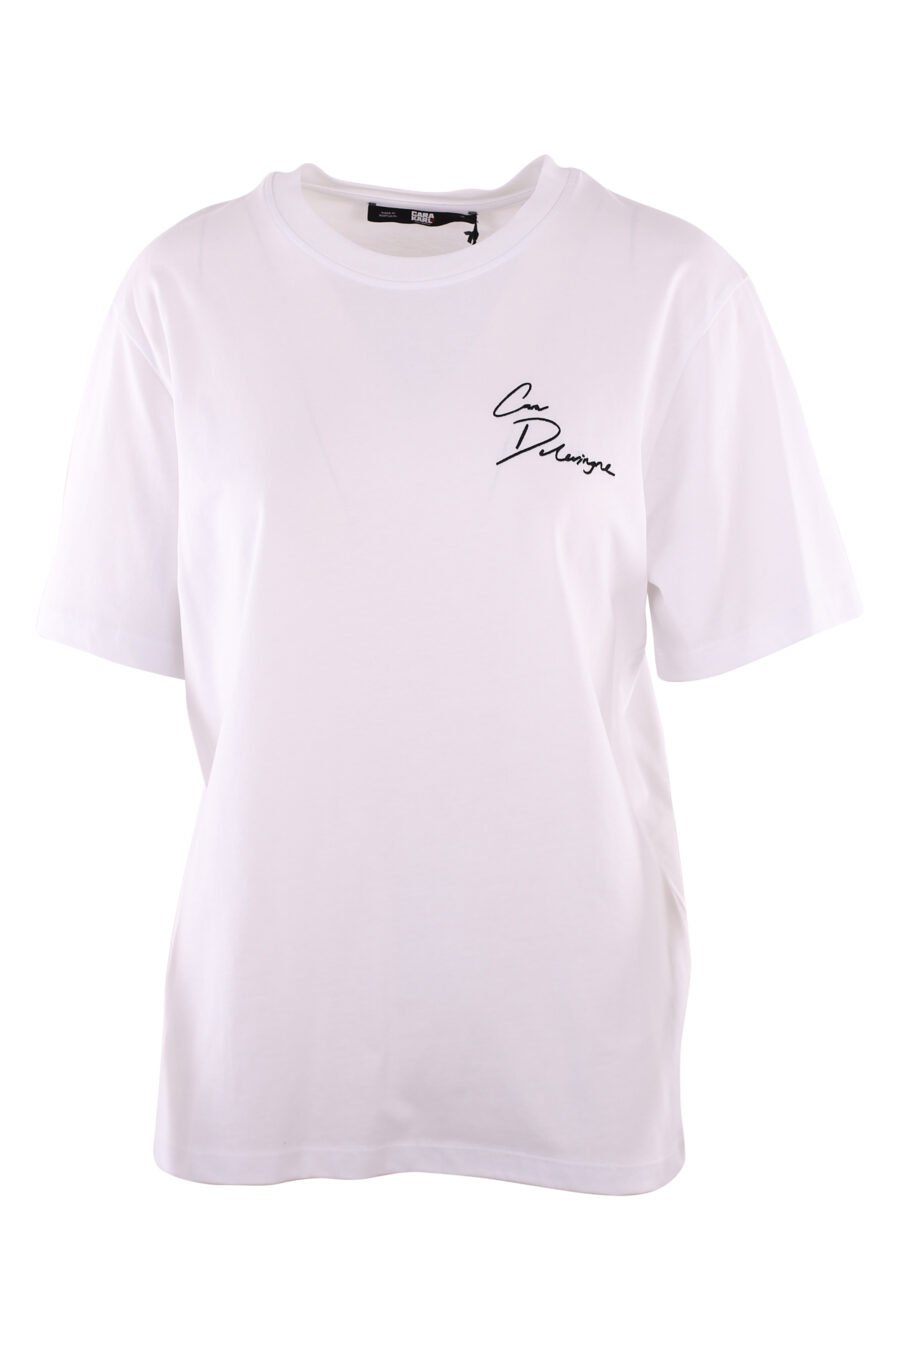 Camiseta blanca con logo firma "cara" negro - IMG 6088